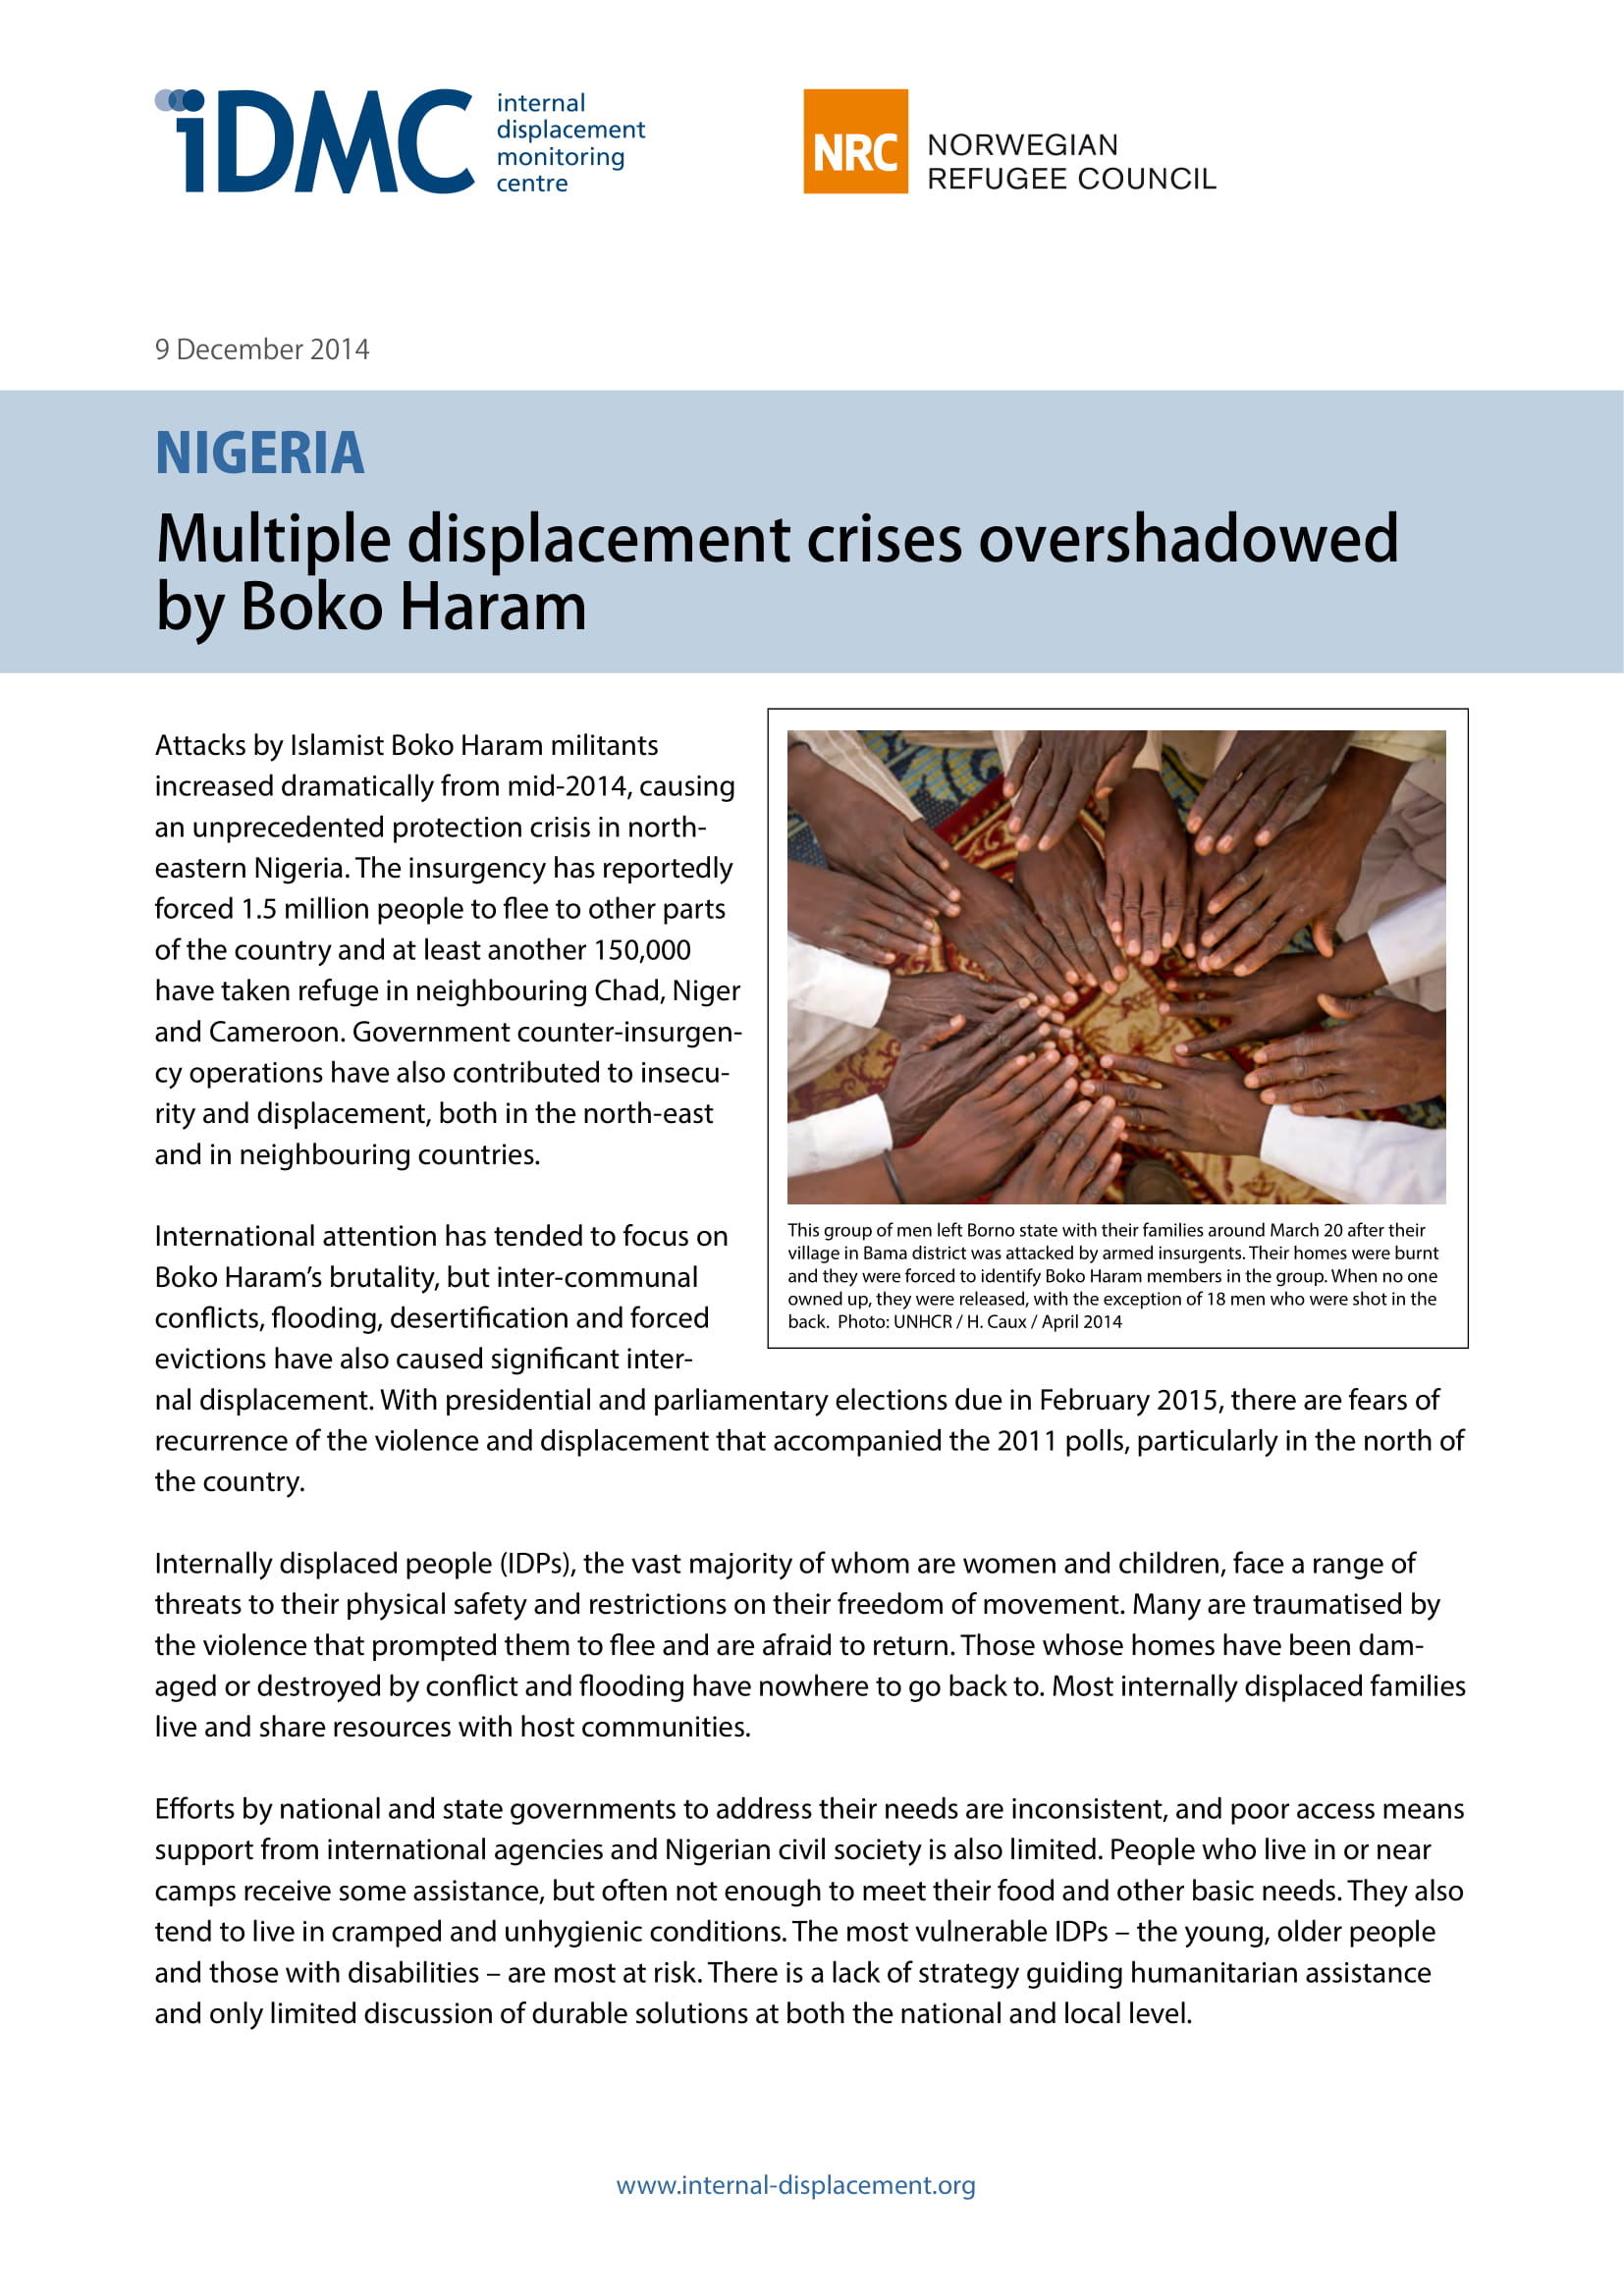 Nigeria: Multiple displacement crises overshadowed by Boko Haram